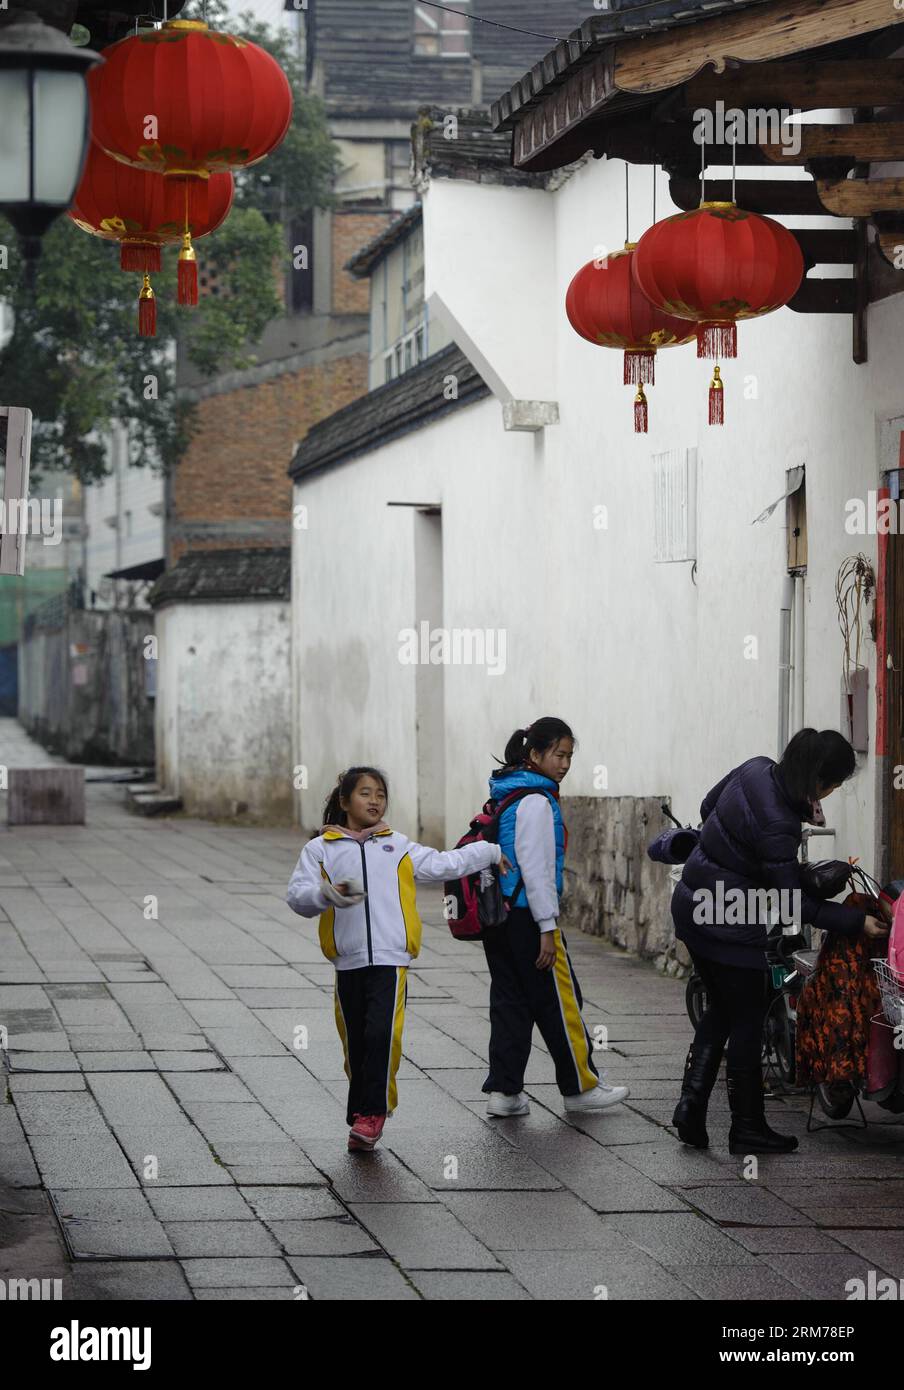 Ein Schüler (L) tanzt in den alten Gassen Three Lanes und Seven Alleys in Fuzhou, der Hauptstadt der südöstlichen chinesischen Provinz Fujian, am 18. Februar 2014. Viele Leute kamen hierher, um die Aussicht auf drei Lanes und sieben Gassen bei nebelndem Regen zu genießen. (Xinhua/Jiang Kehong) (af) CHINA-FUZHOU-TRAVEL(CN) PUBLICATIONxNOTxINxCHN ein Schüler tanzt in der Antike genannt drei Bahnen und Sieben in Fuzhou Hauptstadt von Südostchina S Fujian Provinz 18. Februar 2014 VIELE Prominente kamen hierher, um die Aussicht auf drei Bahnen und Sieben in Nebelrinen XINHUA Jiang Kehong AF China Fuzhou zu genießen Reise CN Verpackung xNOTxINxCHN Stockfoto